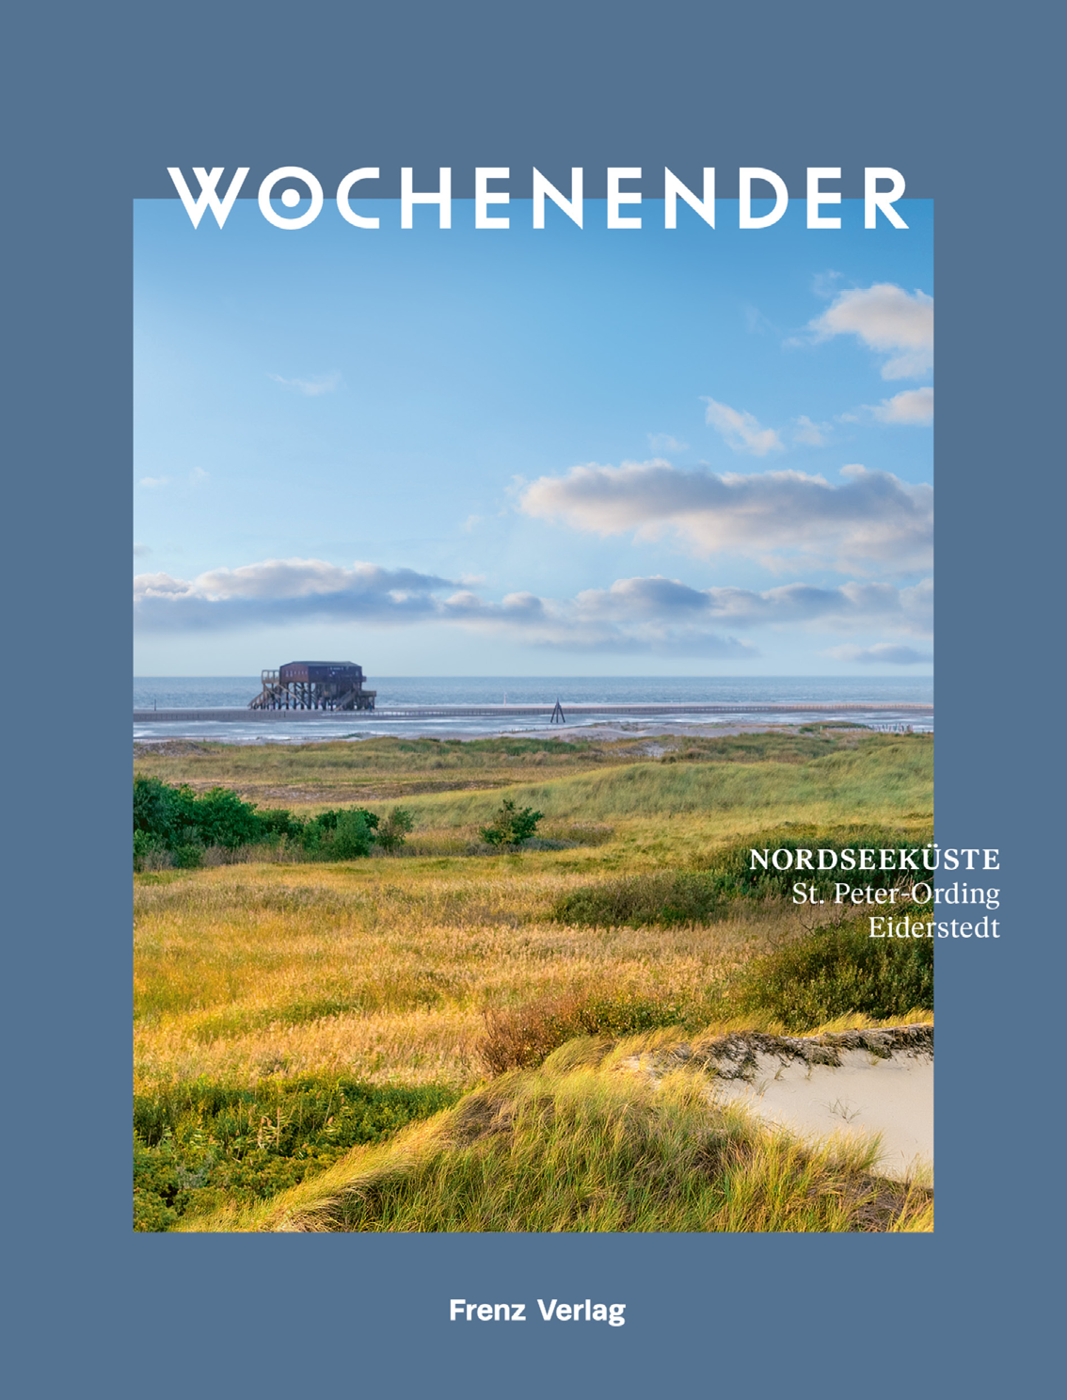 WOCHENENDER – ST. PETER-ORDING & EIDERSTEDT